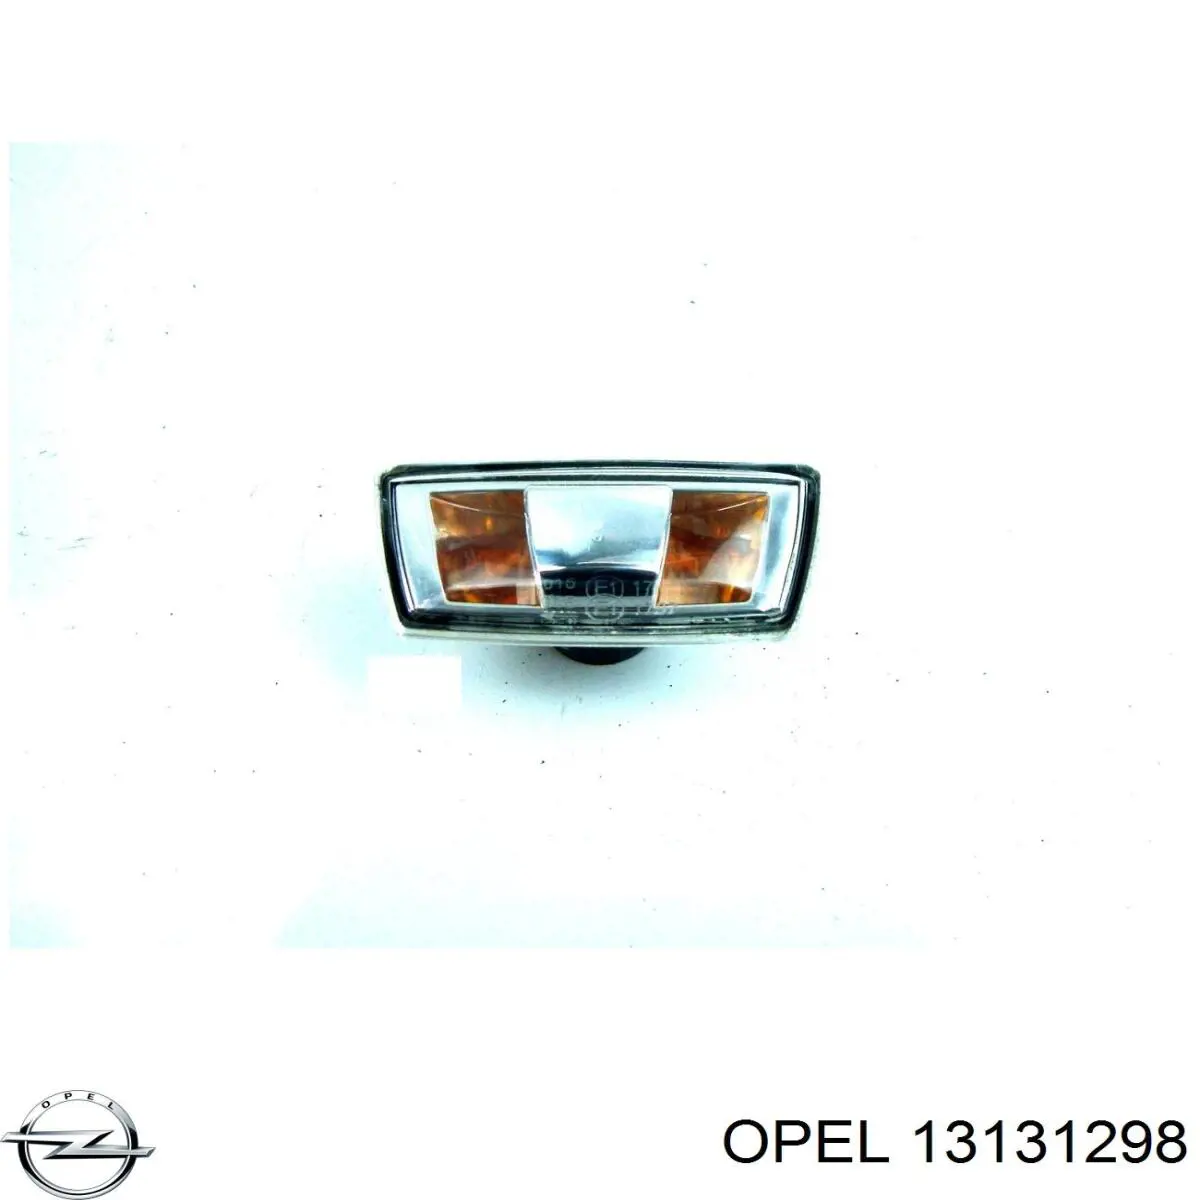 13131298 Opel повторитель поворота на крыле левый